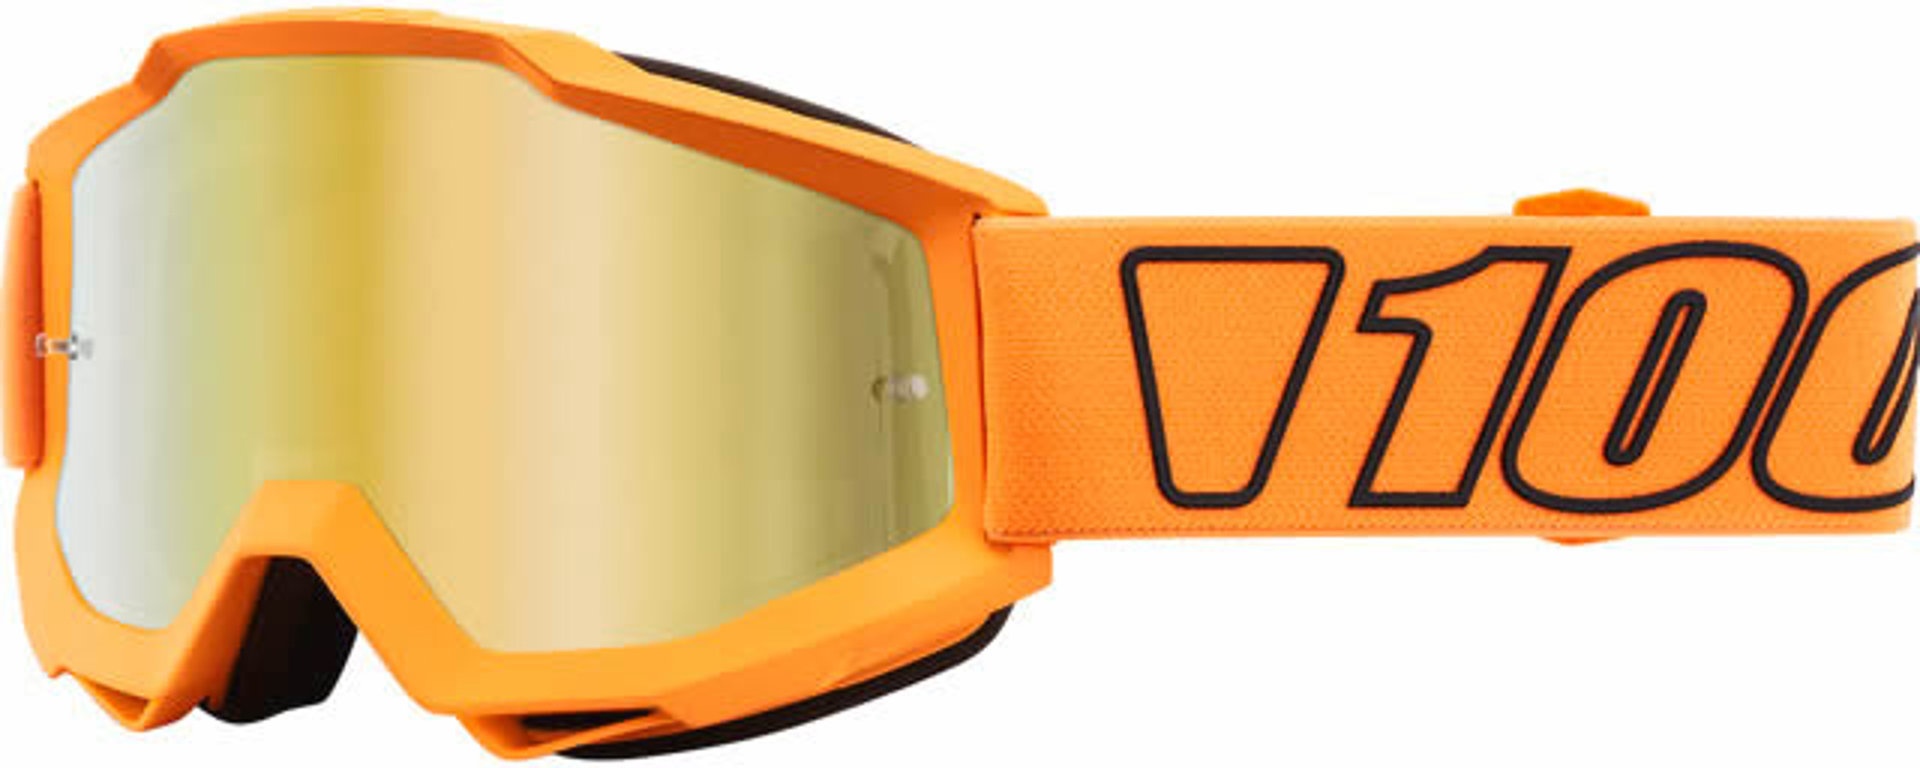 100% Accuri Extra Luminari Motocross Brille, orange